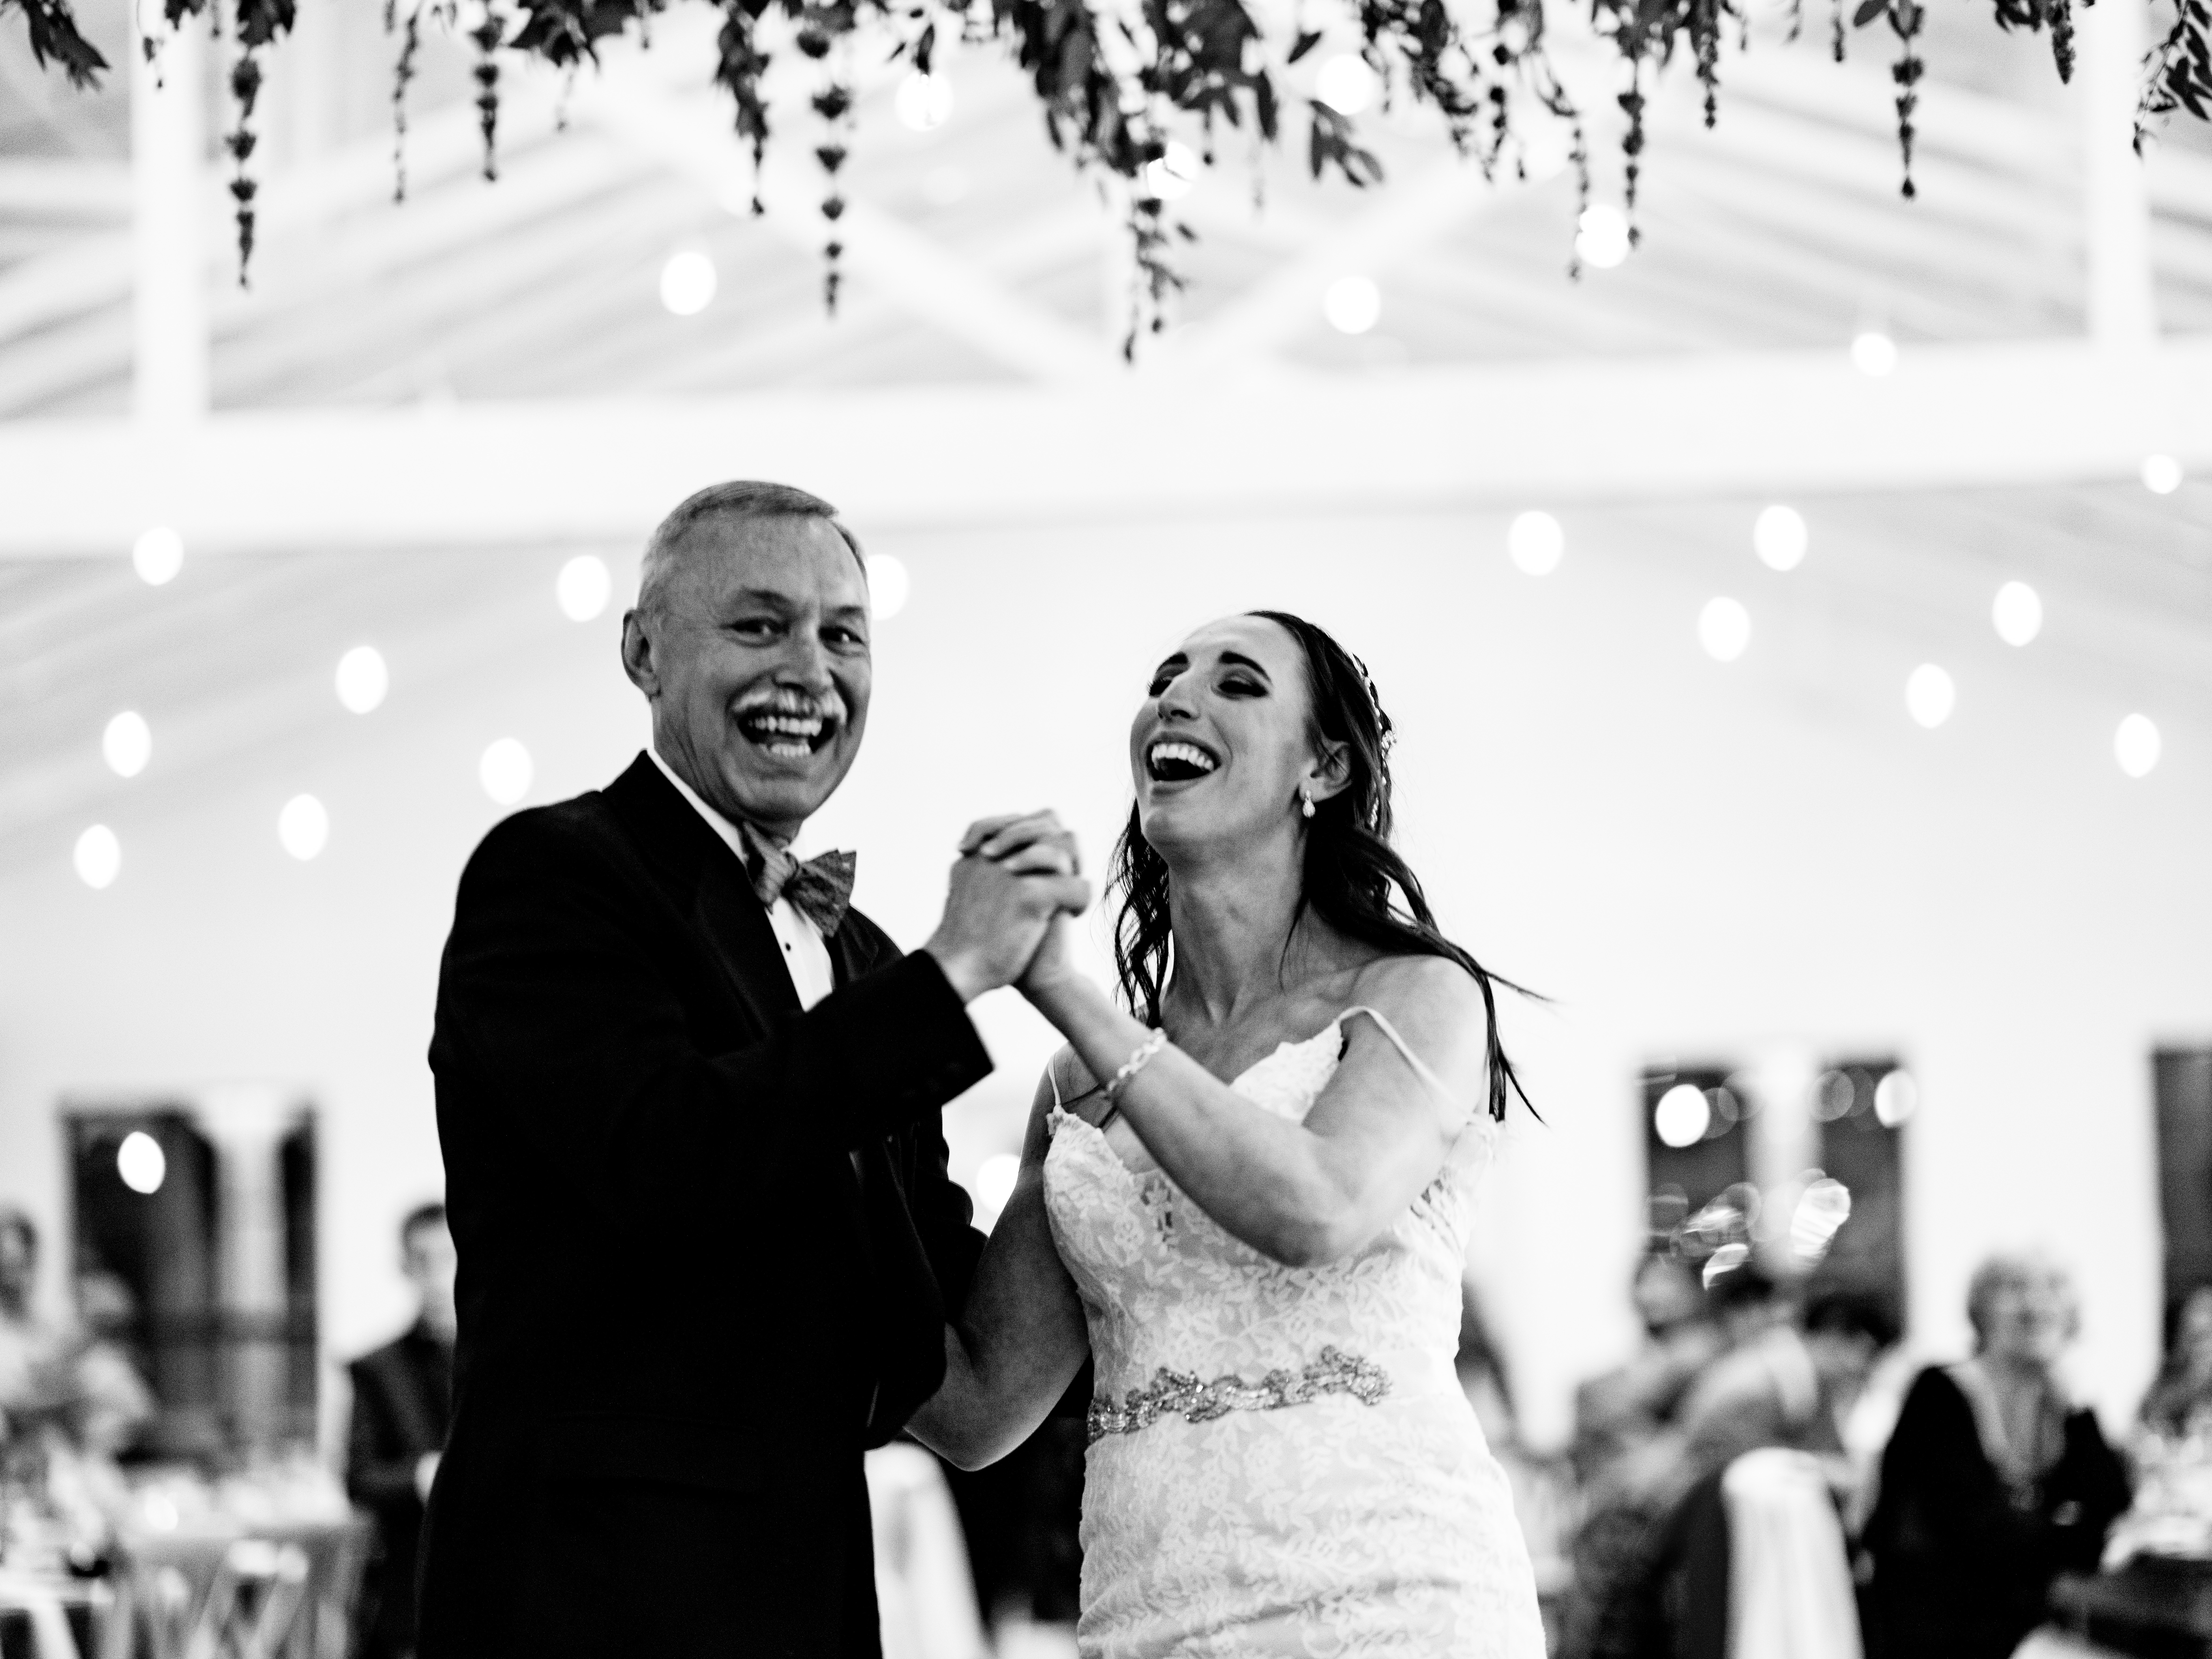 Kindred North Wedding - Northwest Arkansas Wedding - Vinson Images - father daughter dance